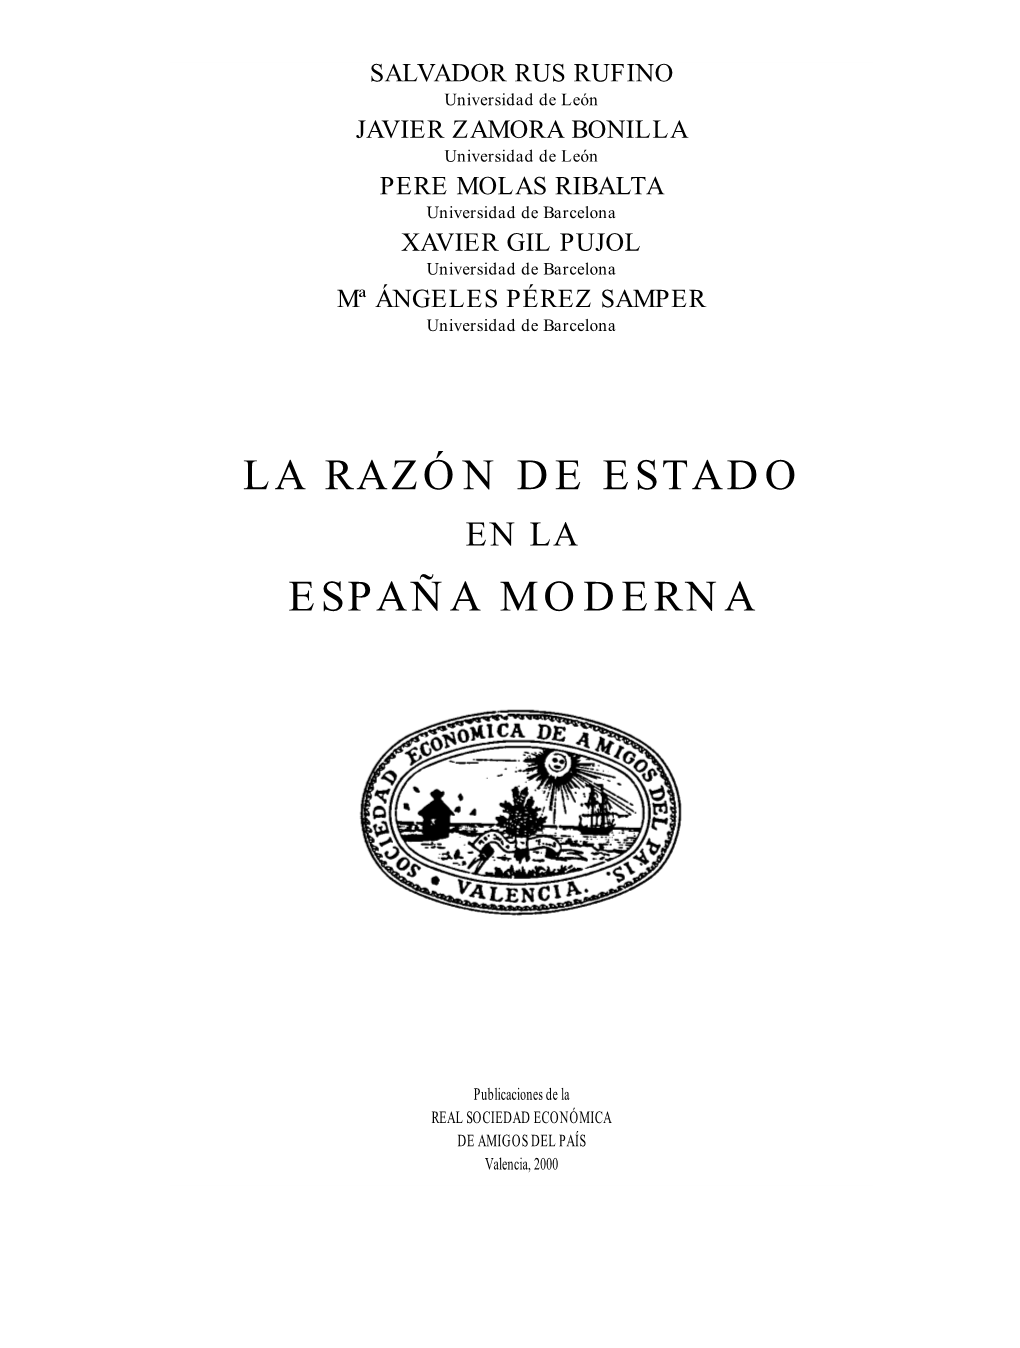 La Razón De Estado España Moderna